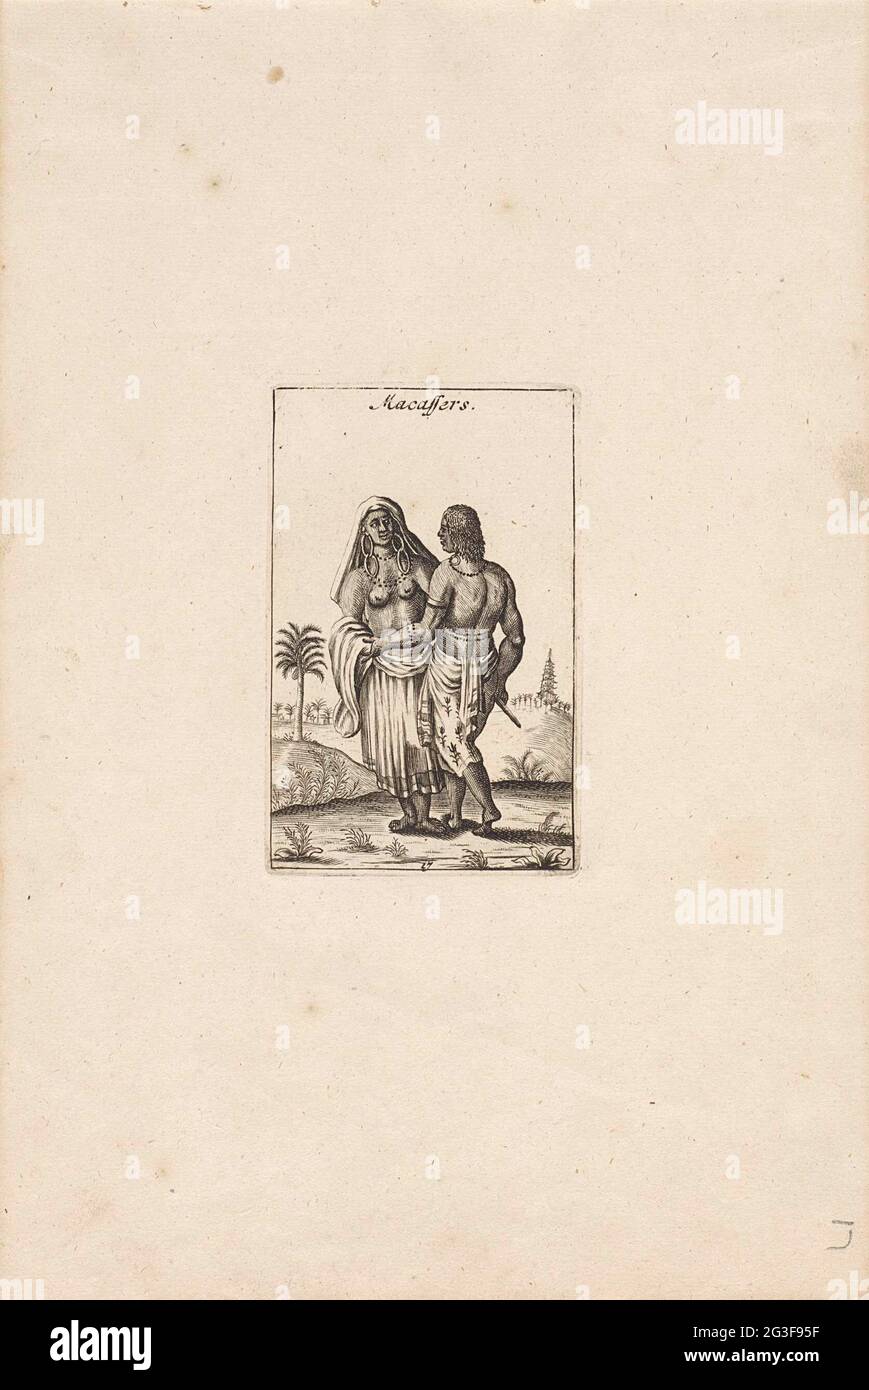 Mann und Frau aus Makassar; Macassers; Chineese und erwürgte Nachhie. Ein Mann und eine Frau aus Makassar, die in einer Landschaft stehen. Stockfoto